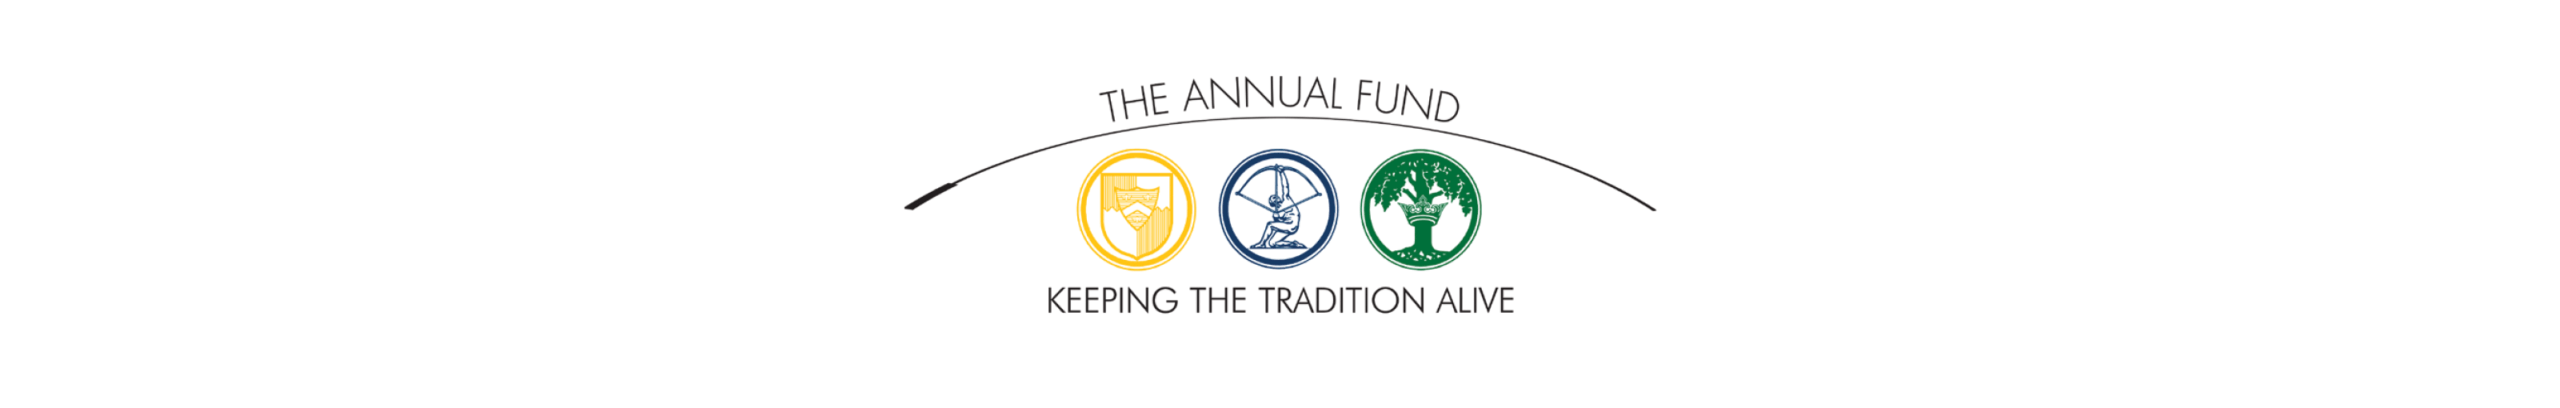 Cranbrook annual fund logo